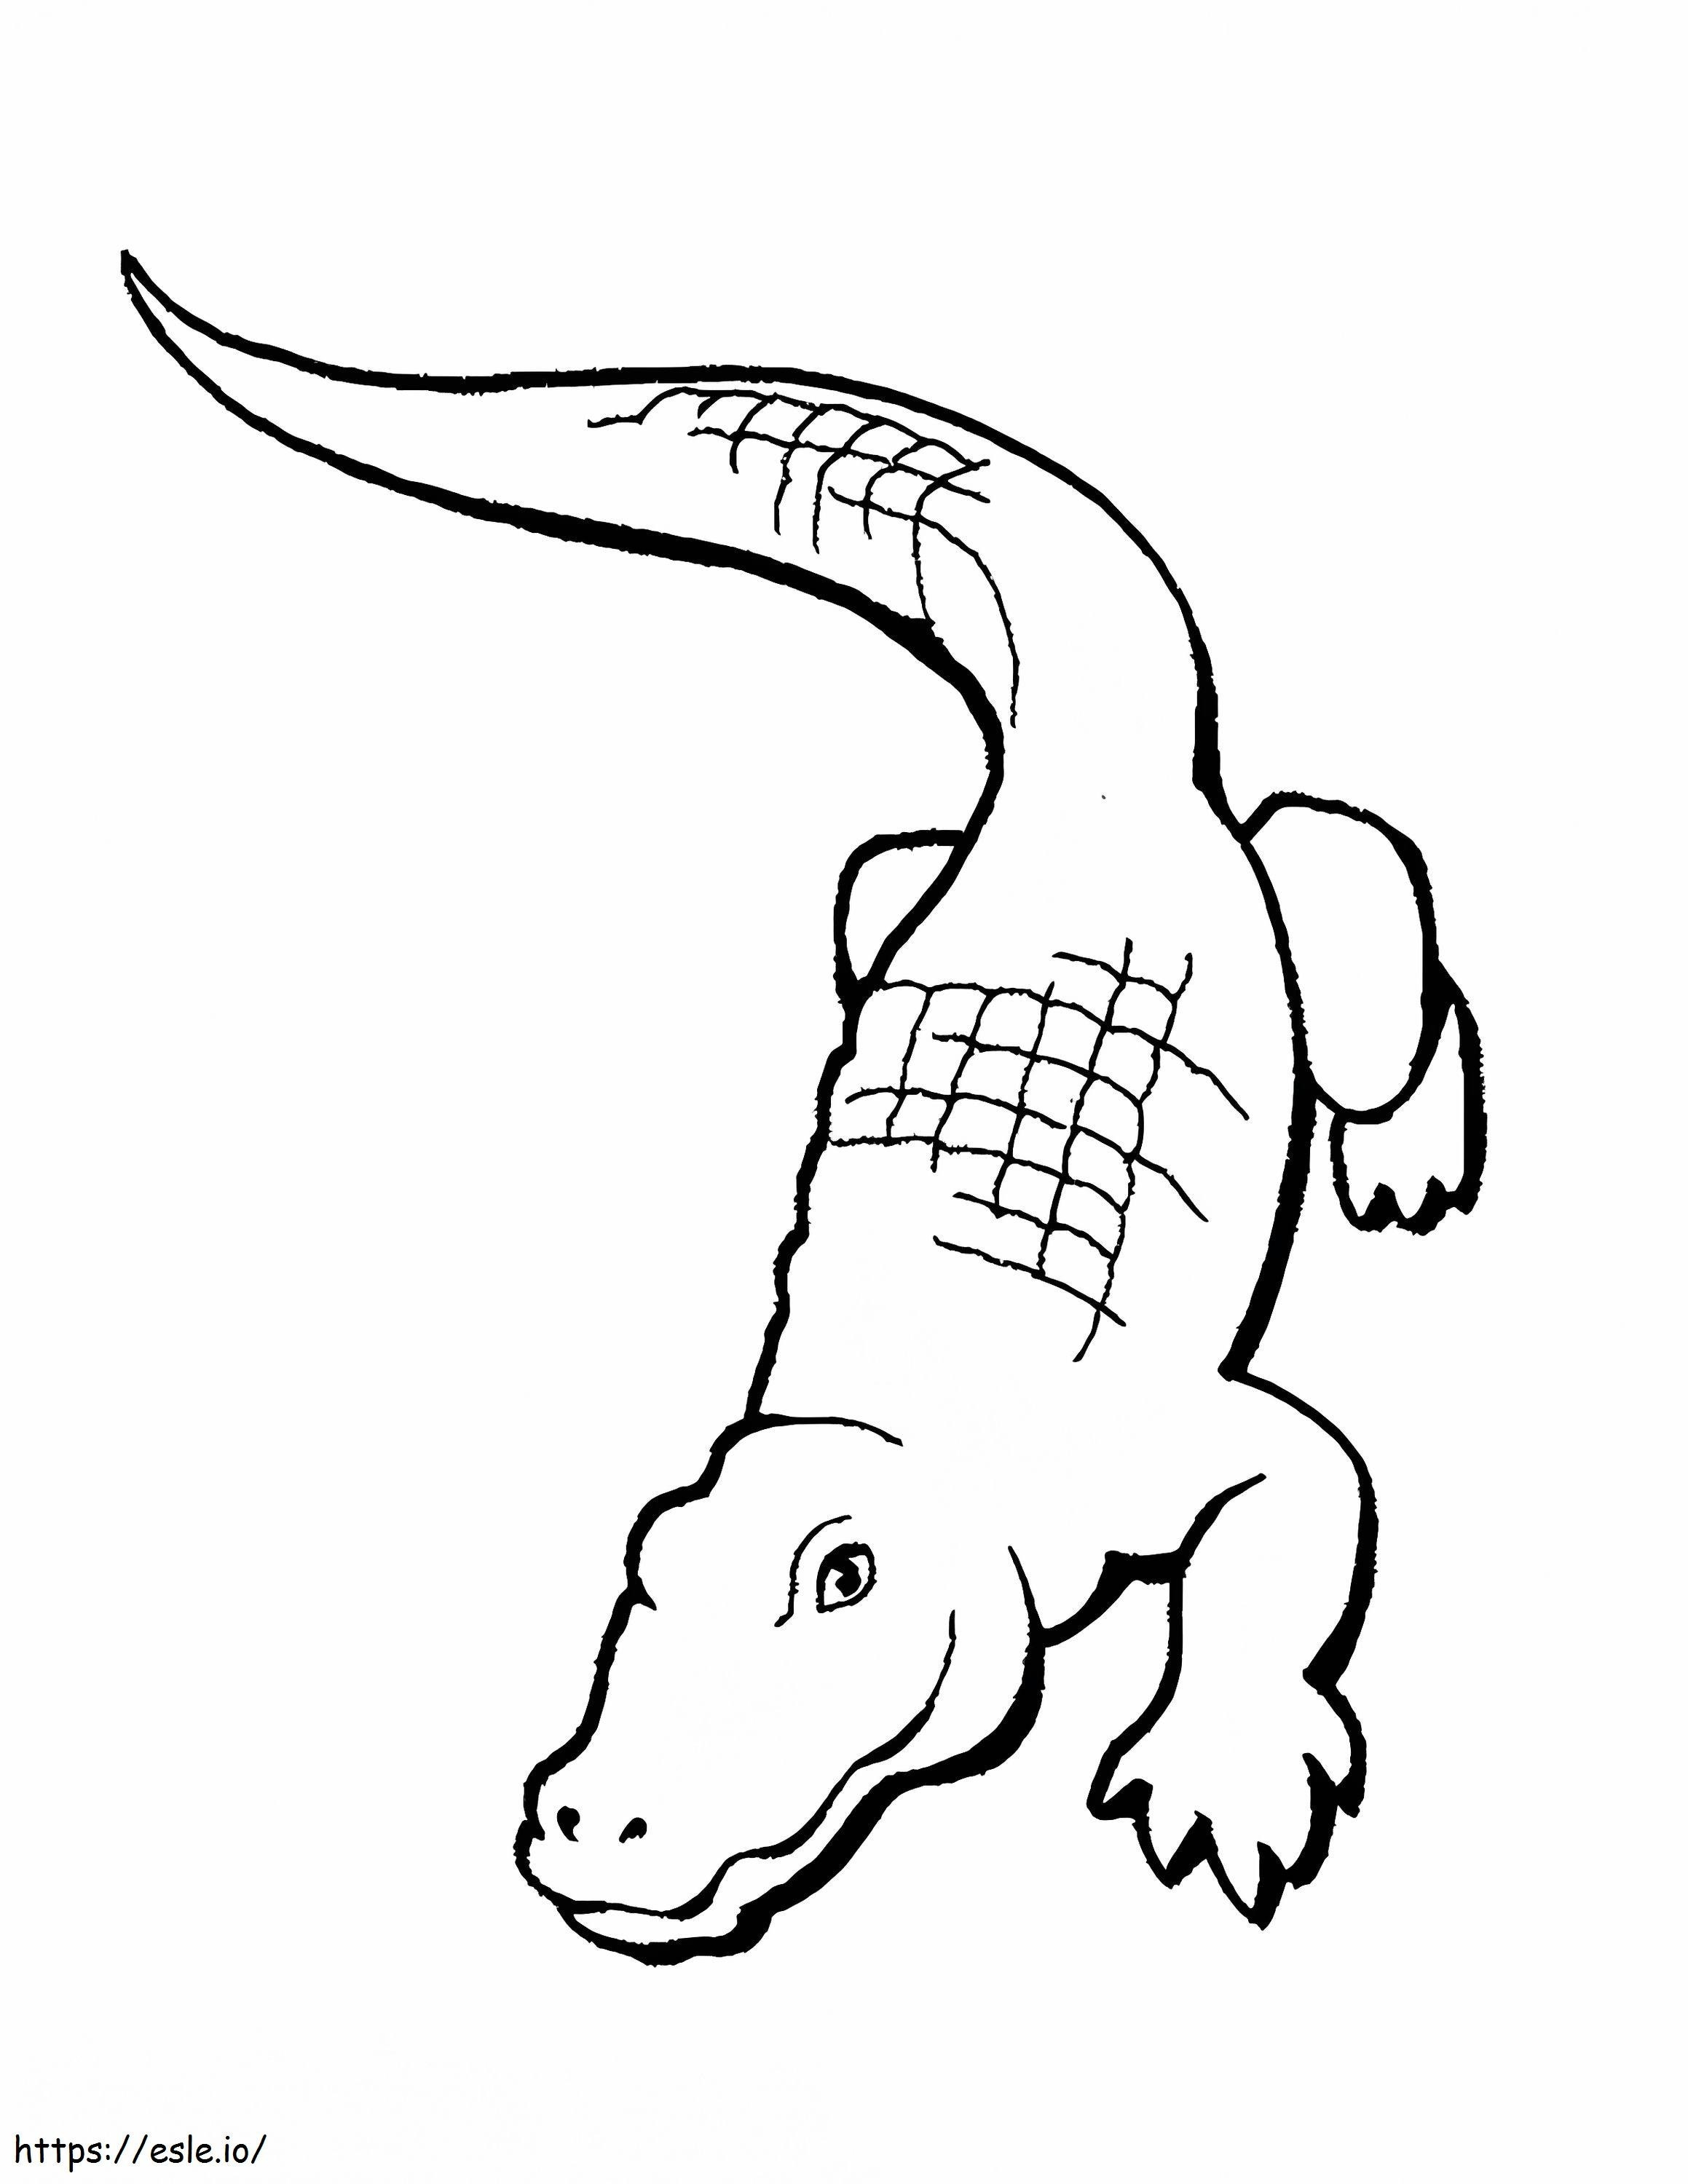 Dibujo básico de cocodrilo para colorear